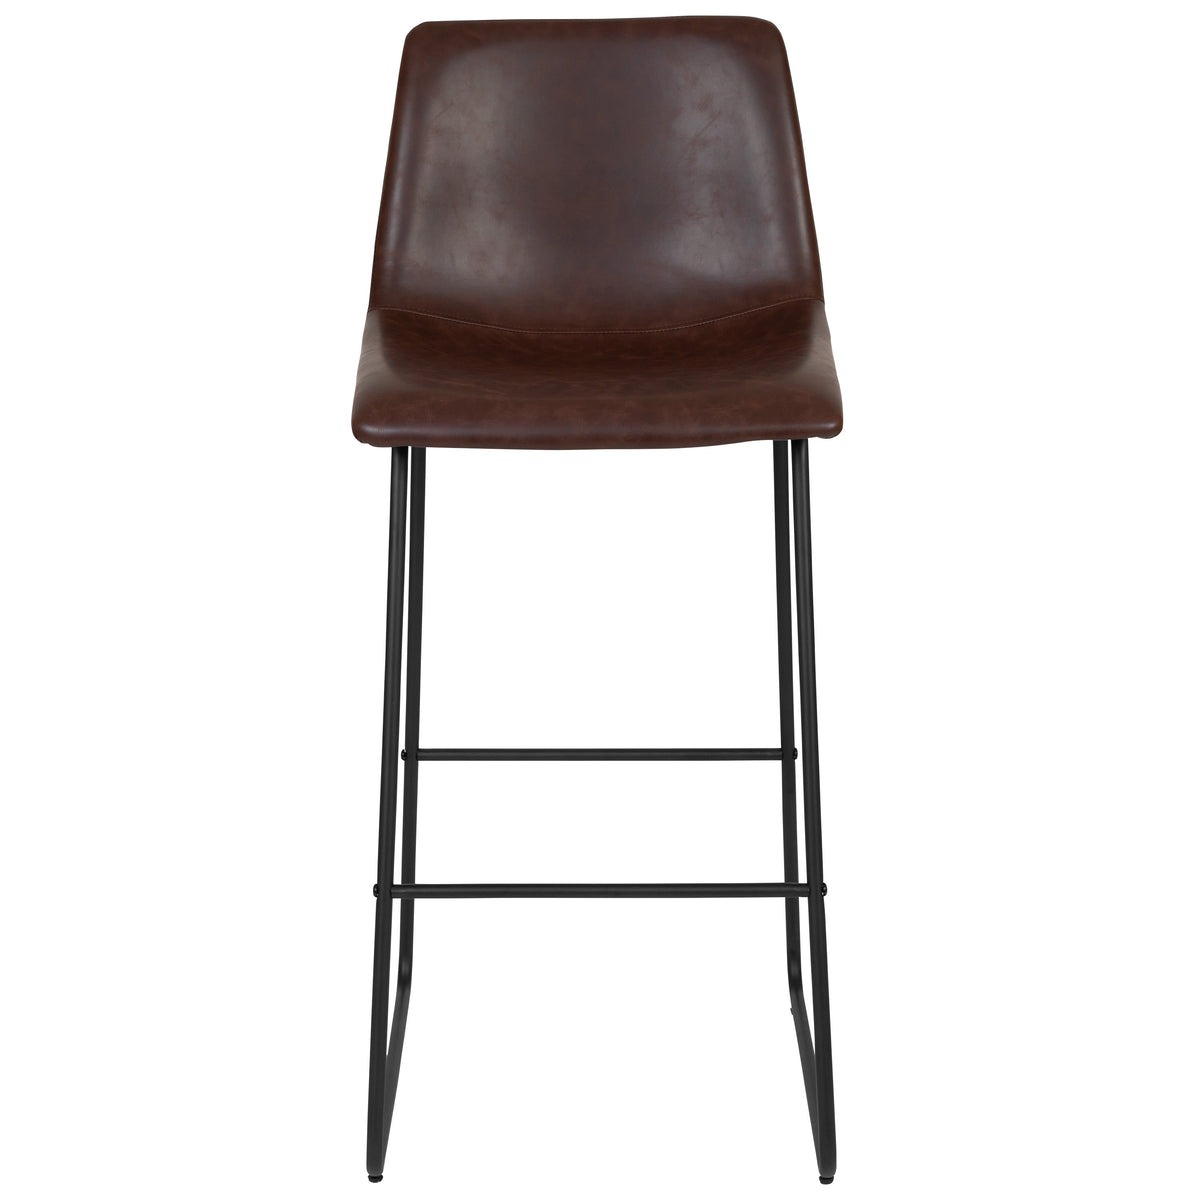 Dark Brown |#| Set of 2 Kitchen Bar Height Stool - 30 Inch Dark Brown LeatherSoft Barstool